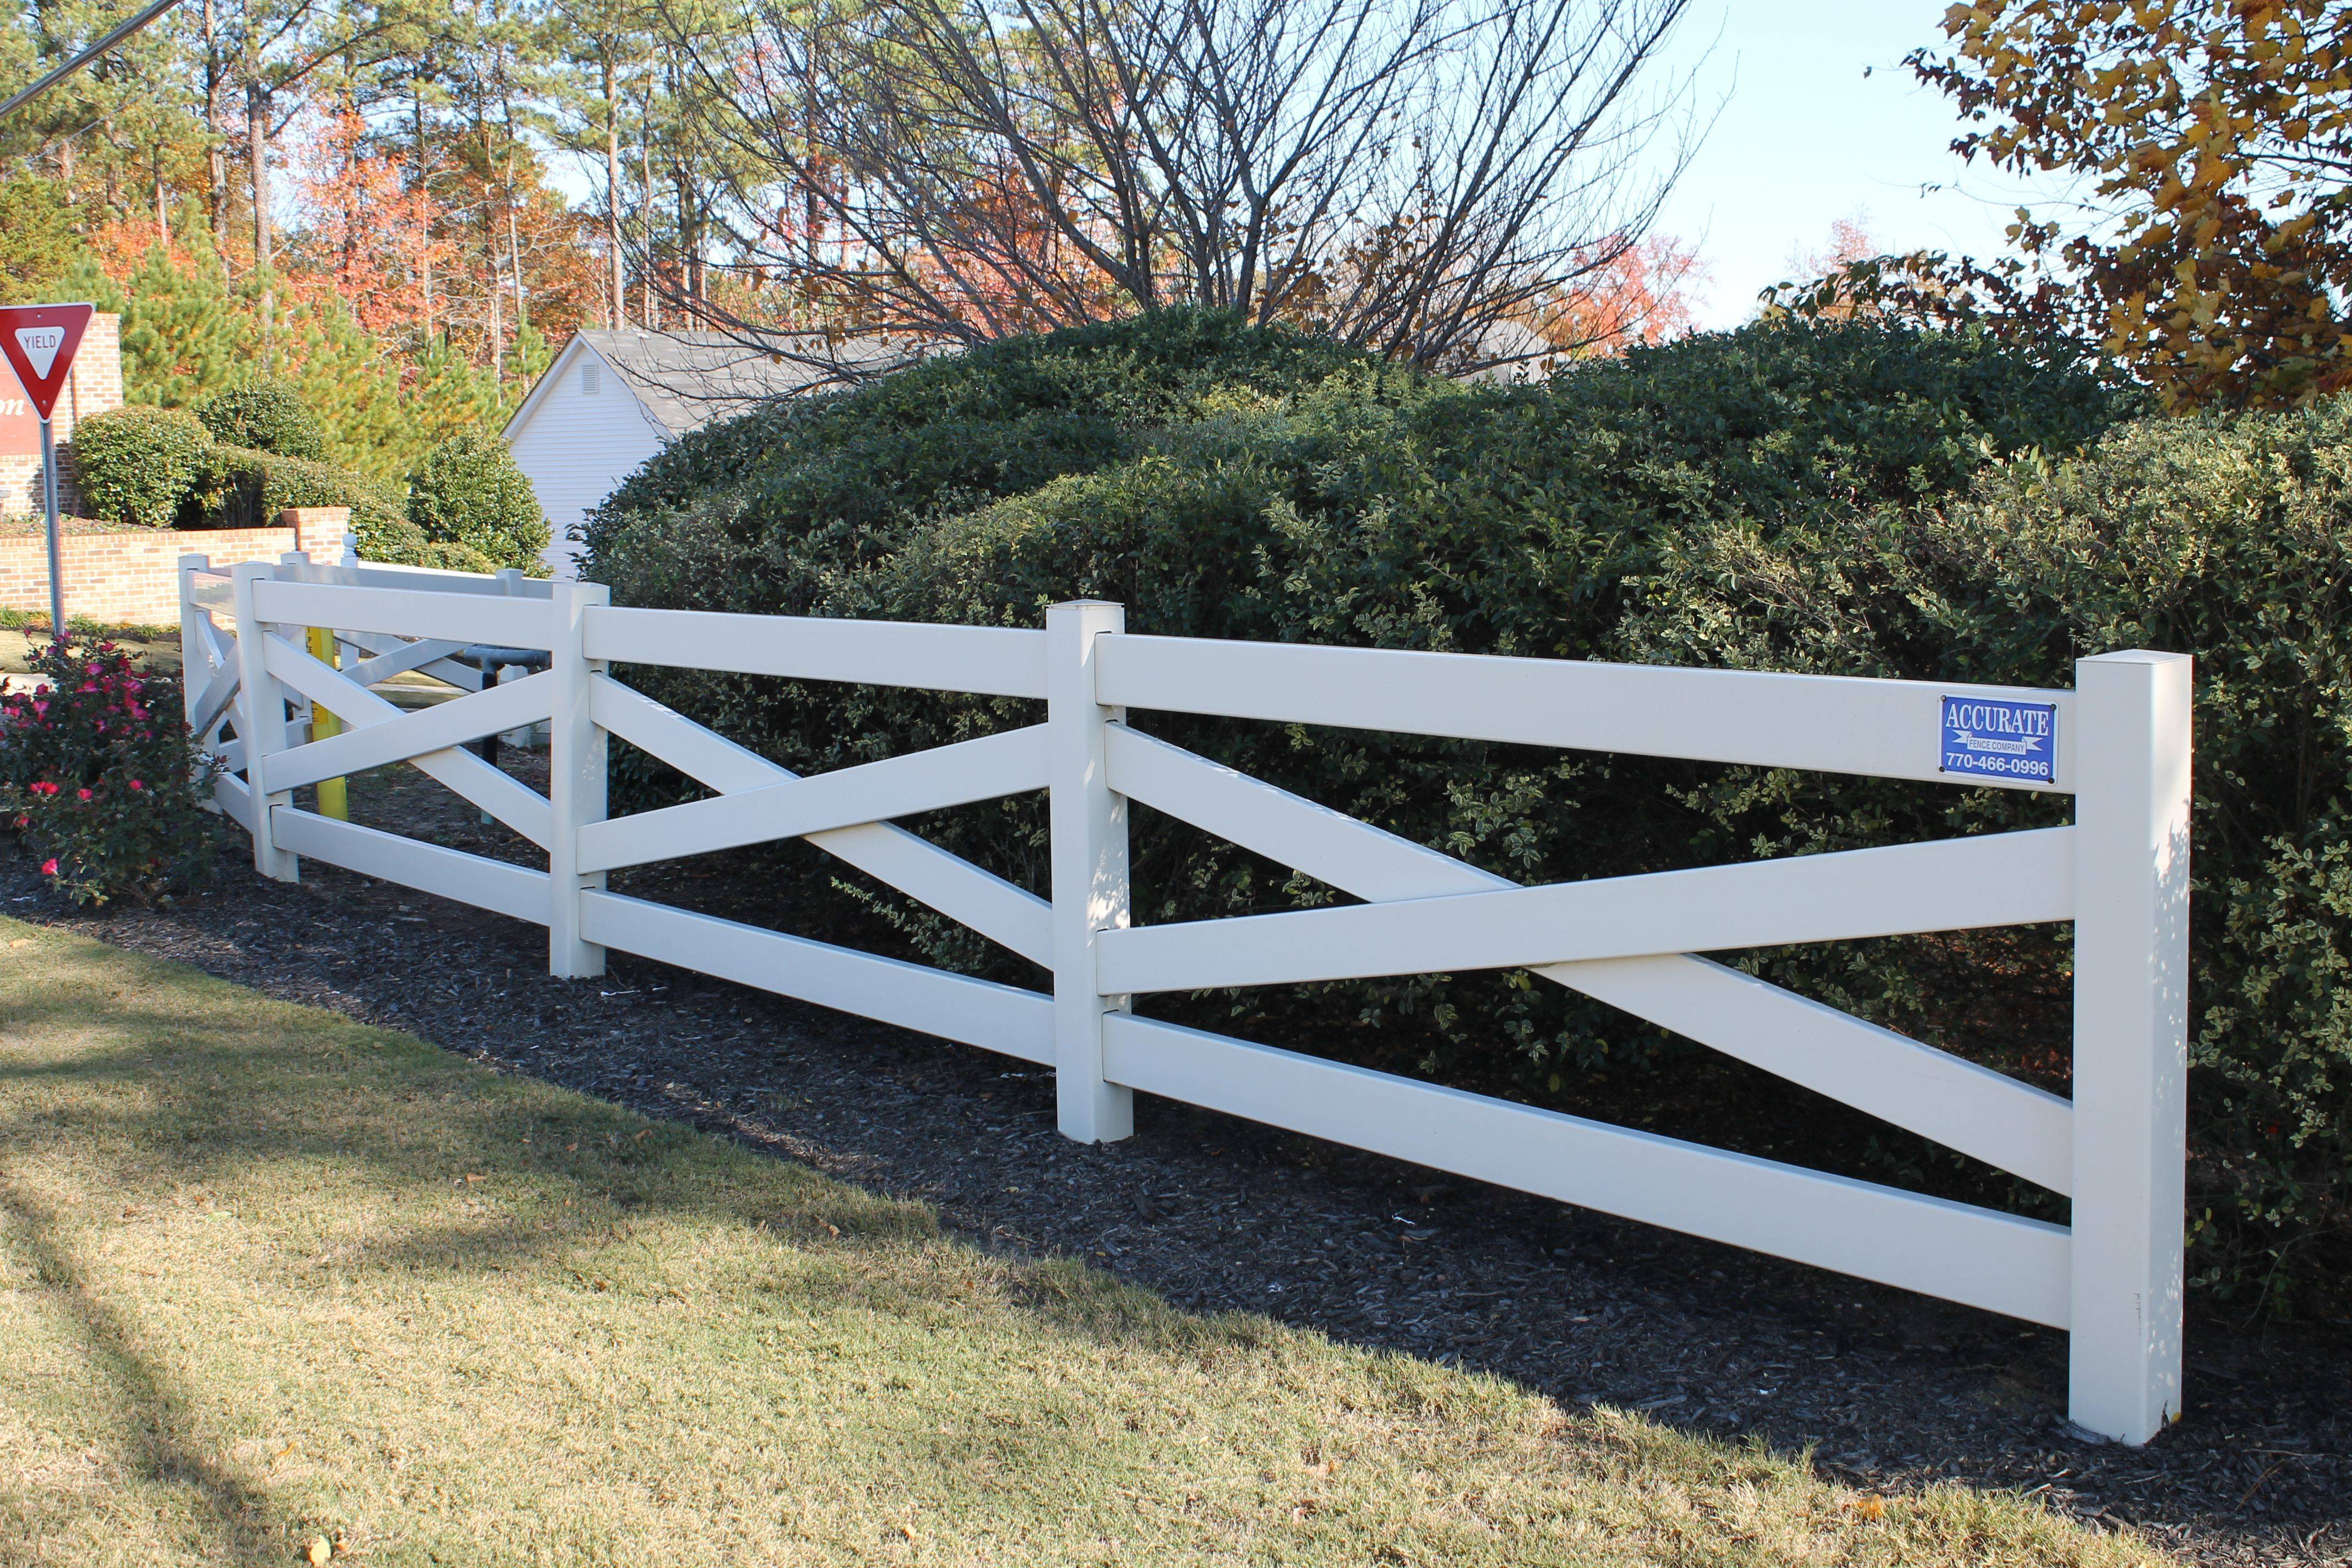 Красивый забор для палисадника своими руками: варианты ограды